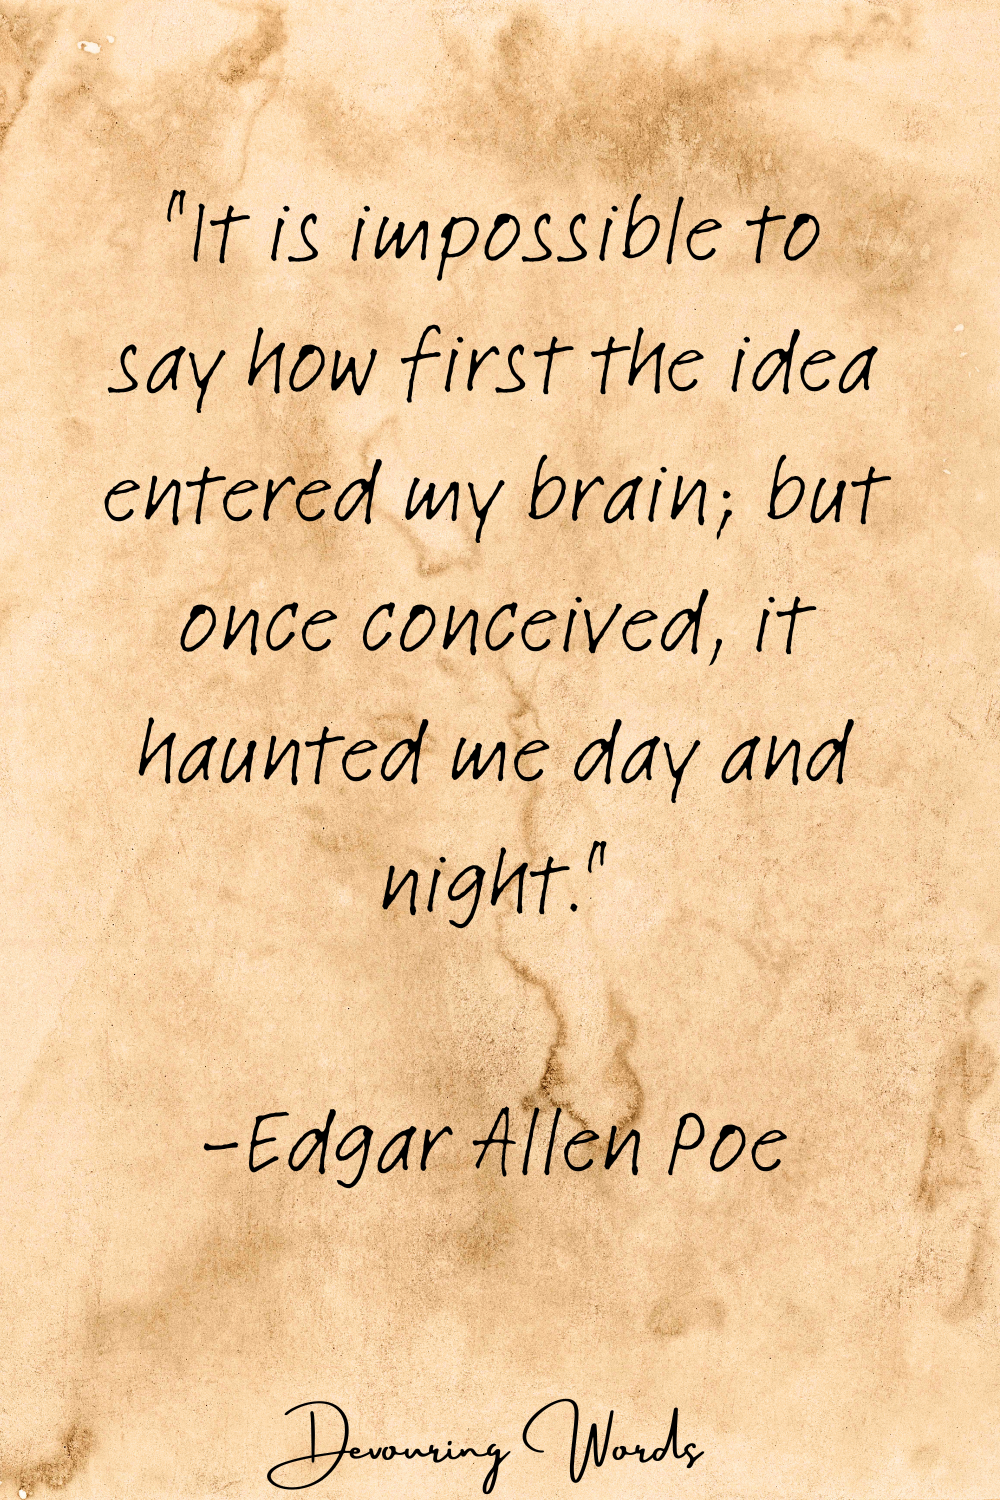 Edgar Allen Poe quotes
